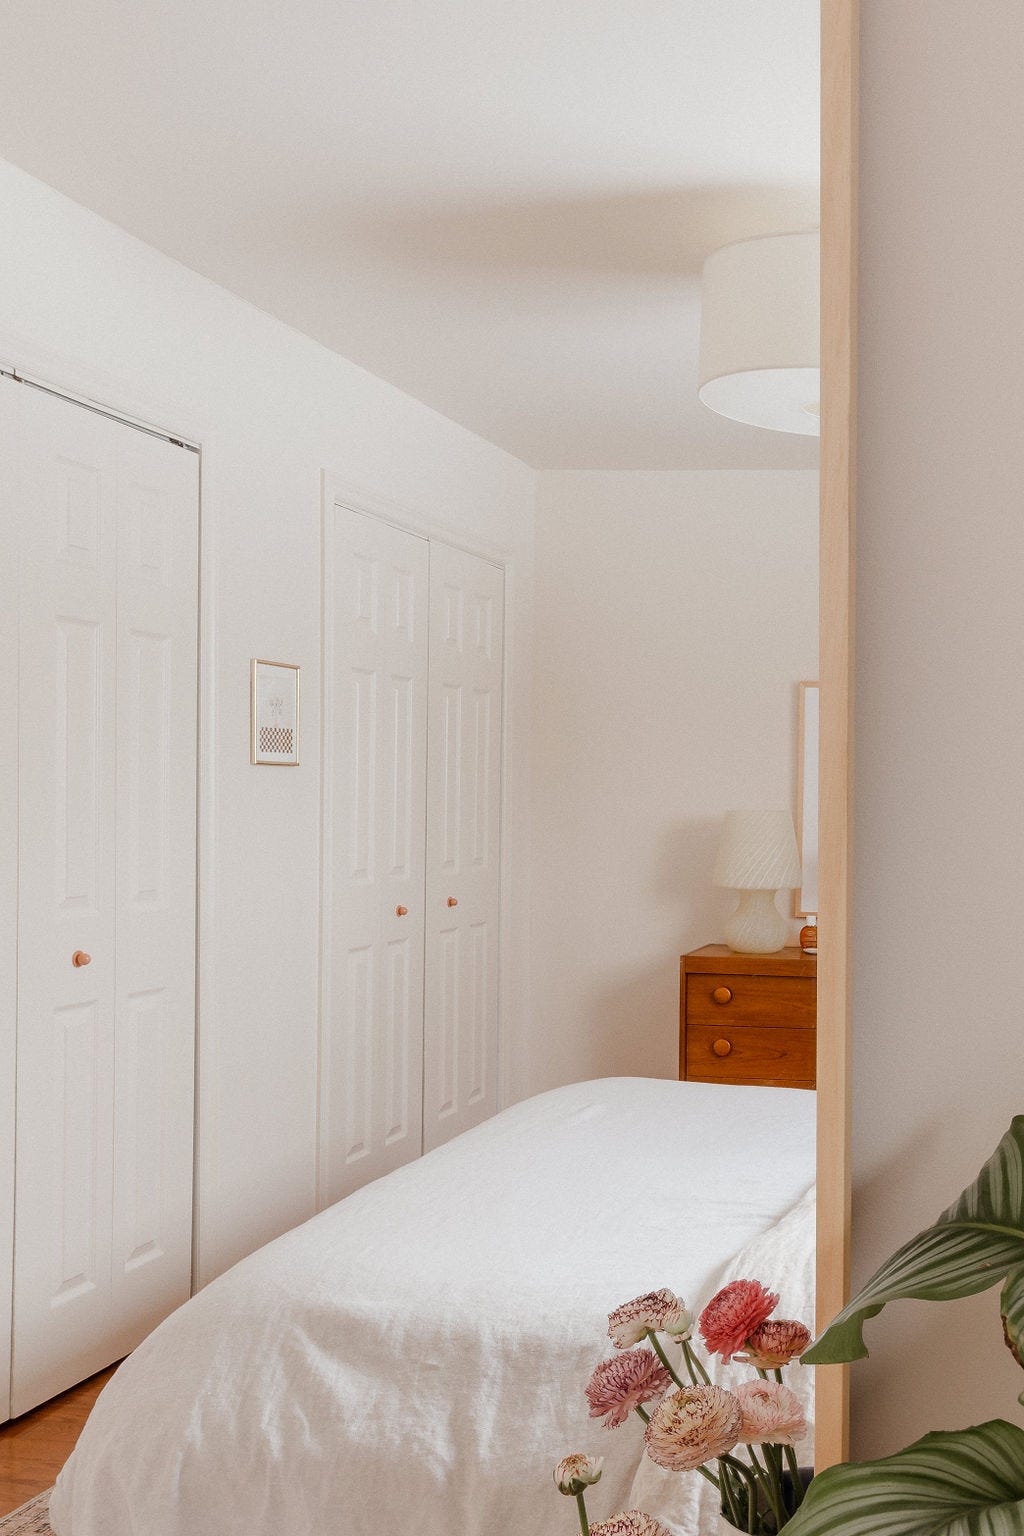 Bedroom inspiration for light walls, vintage elements